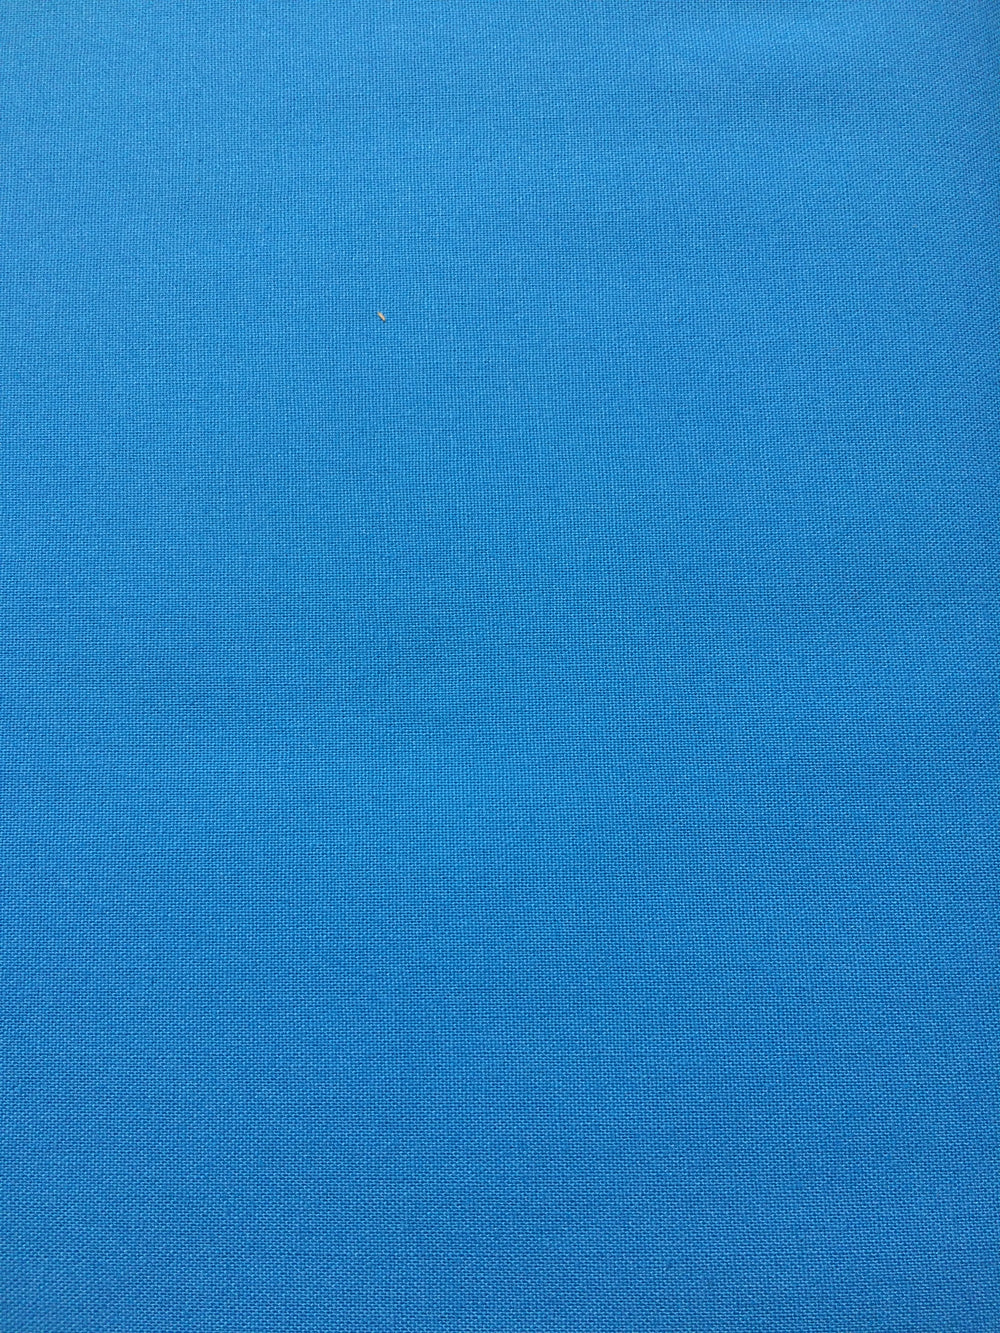 Sonoma Solids - Bright Blue